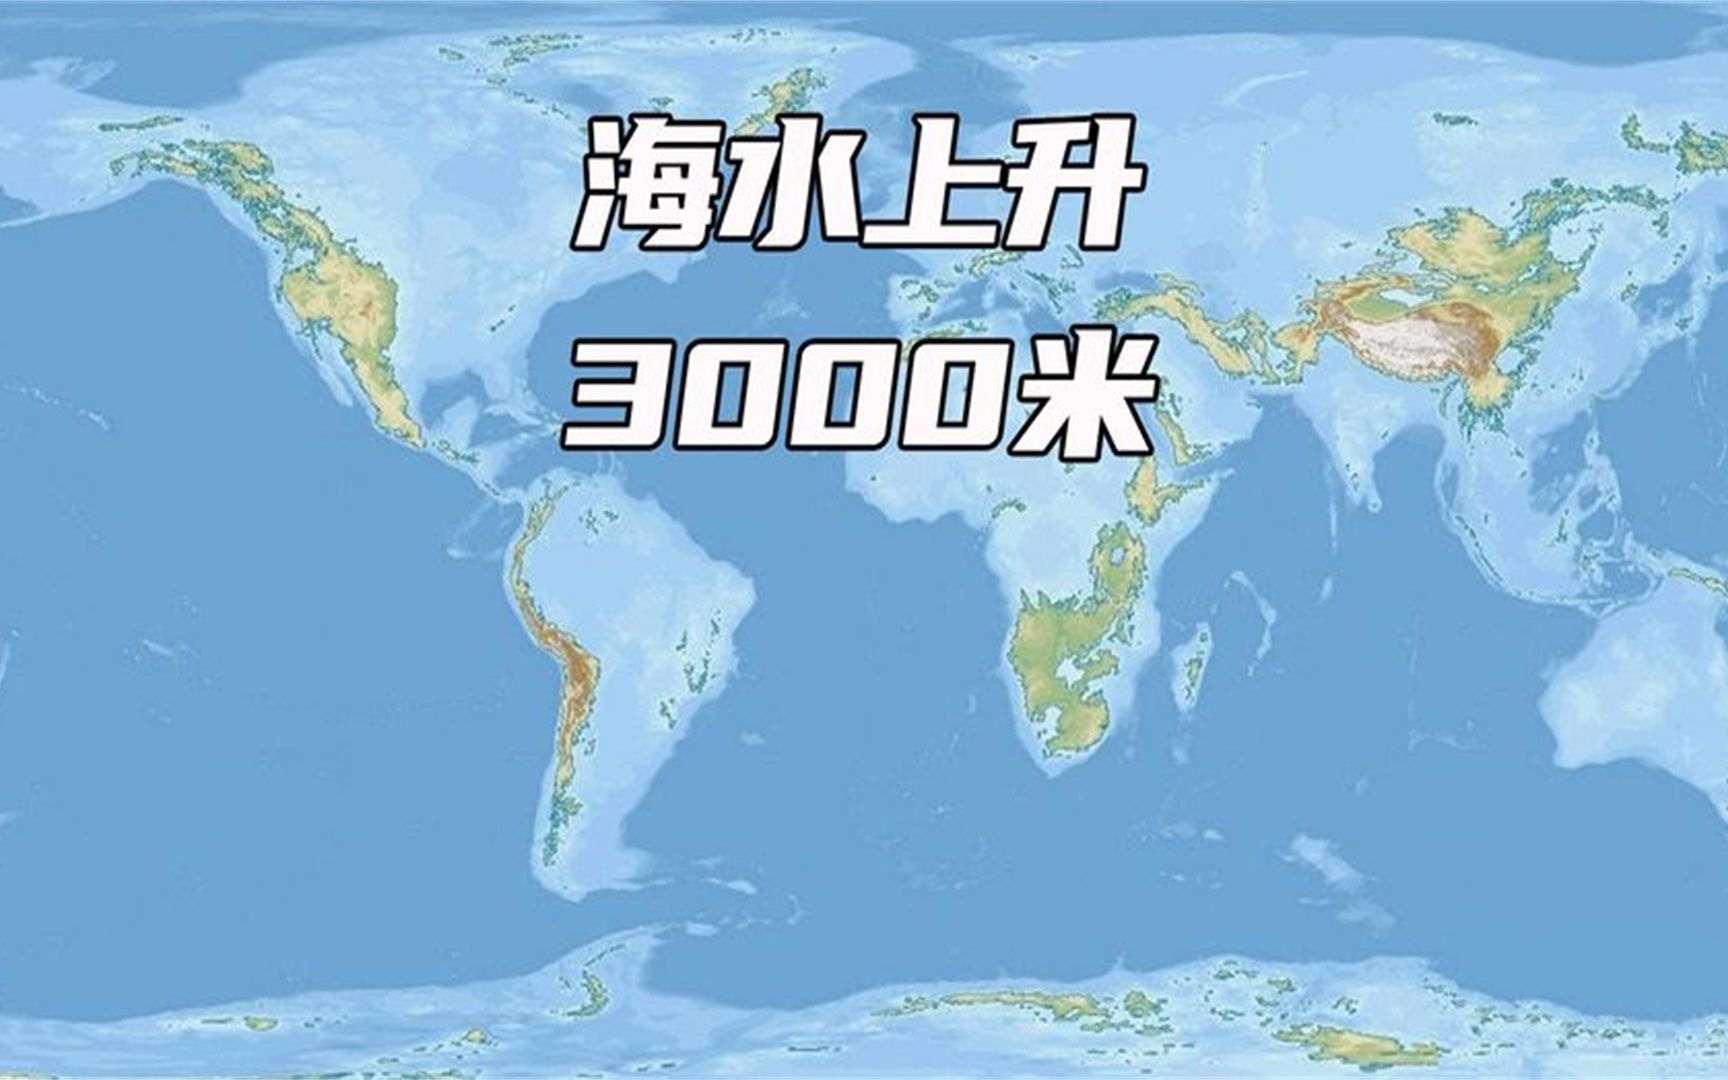 海平面上升3000米，地球还剩下几块陆地？哪几个地区还能居住呢？